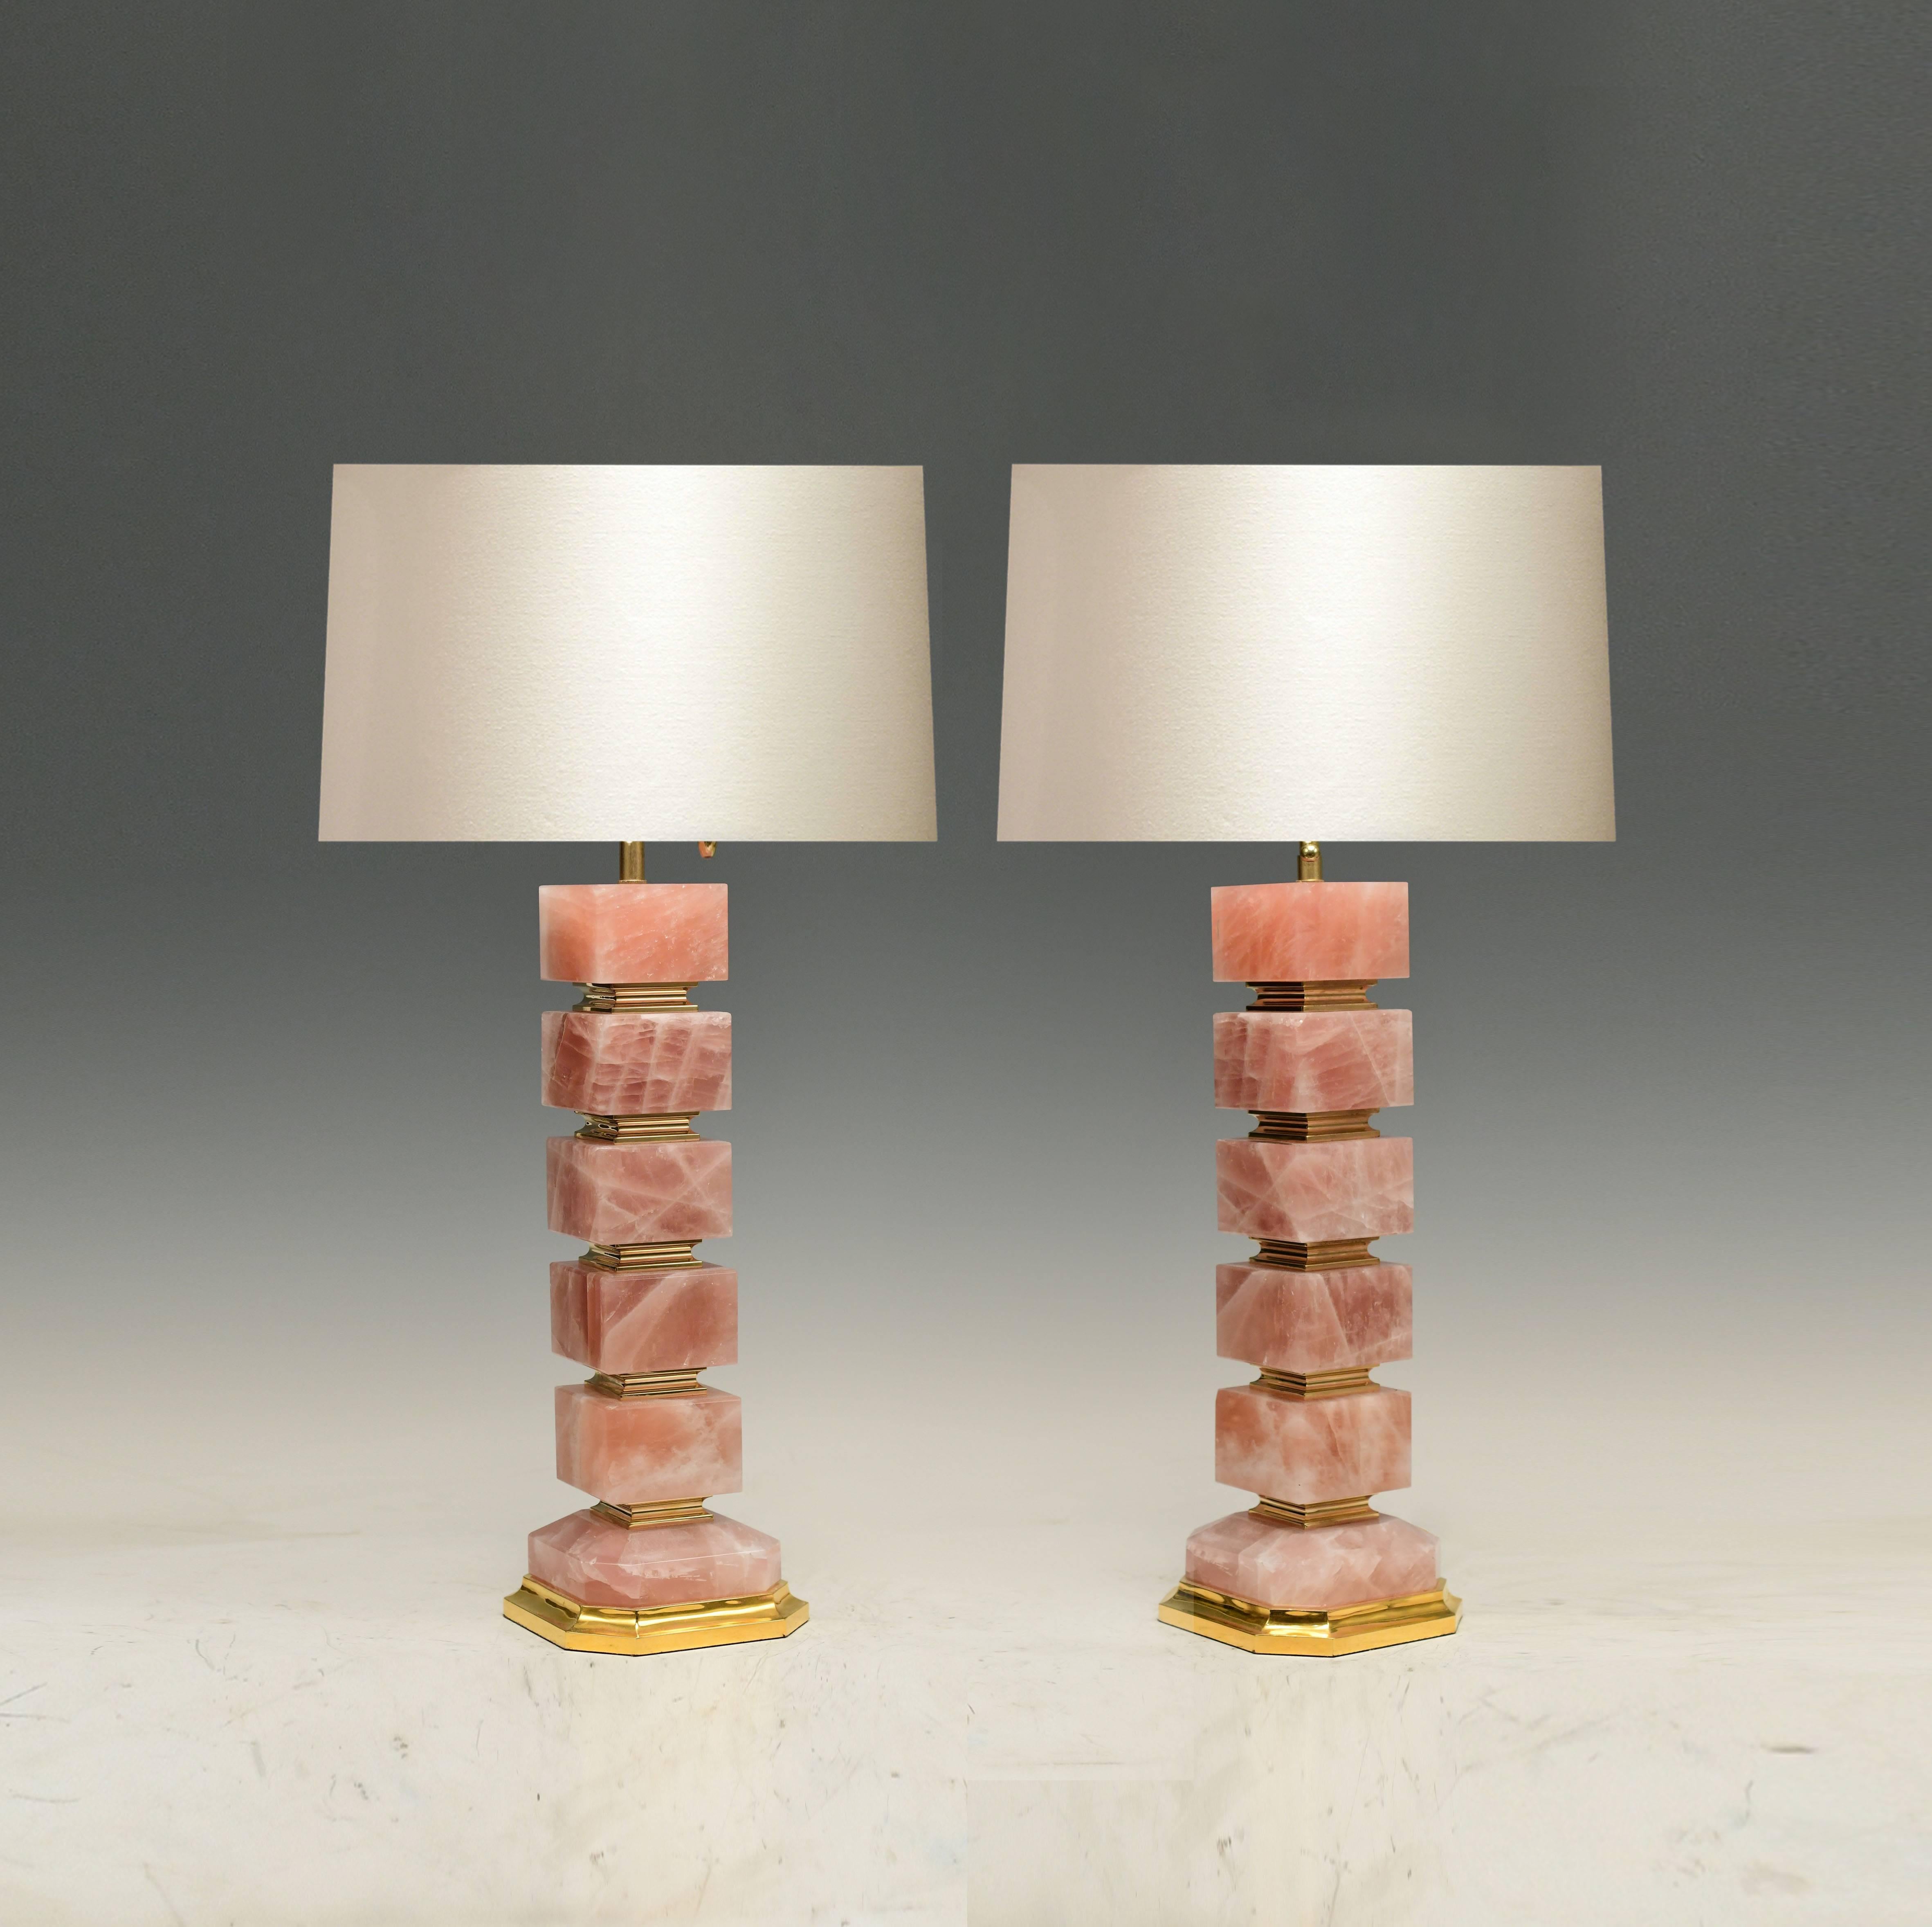 Ein Paar Tischlampen aus Rosenquarz-Bergkristall mit Sockel aus poliertem Messing und Verzierungen. Von Phoenix Gallery NYC.
Die Höhe bis zur Spitze des Bergkristalls beträgt 18,5